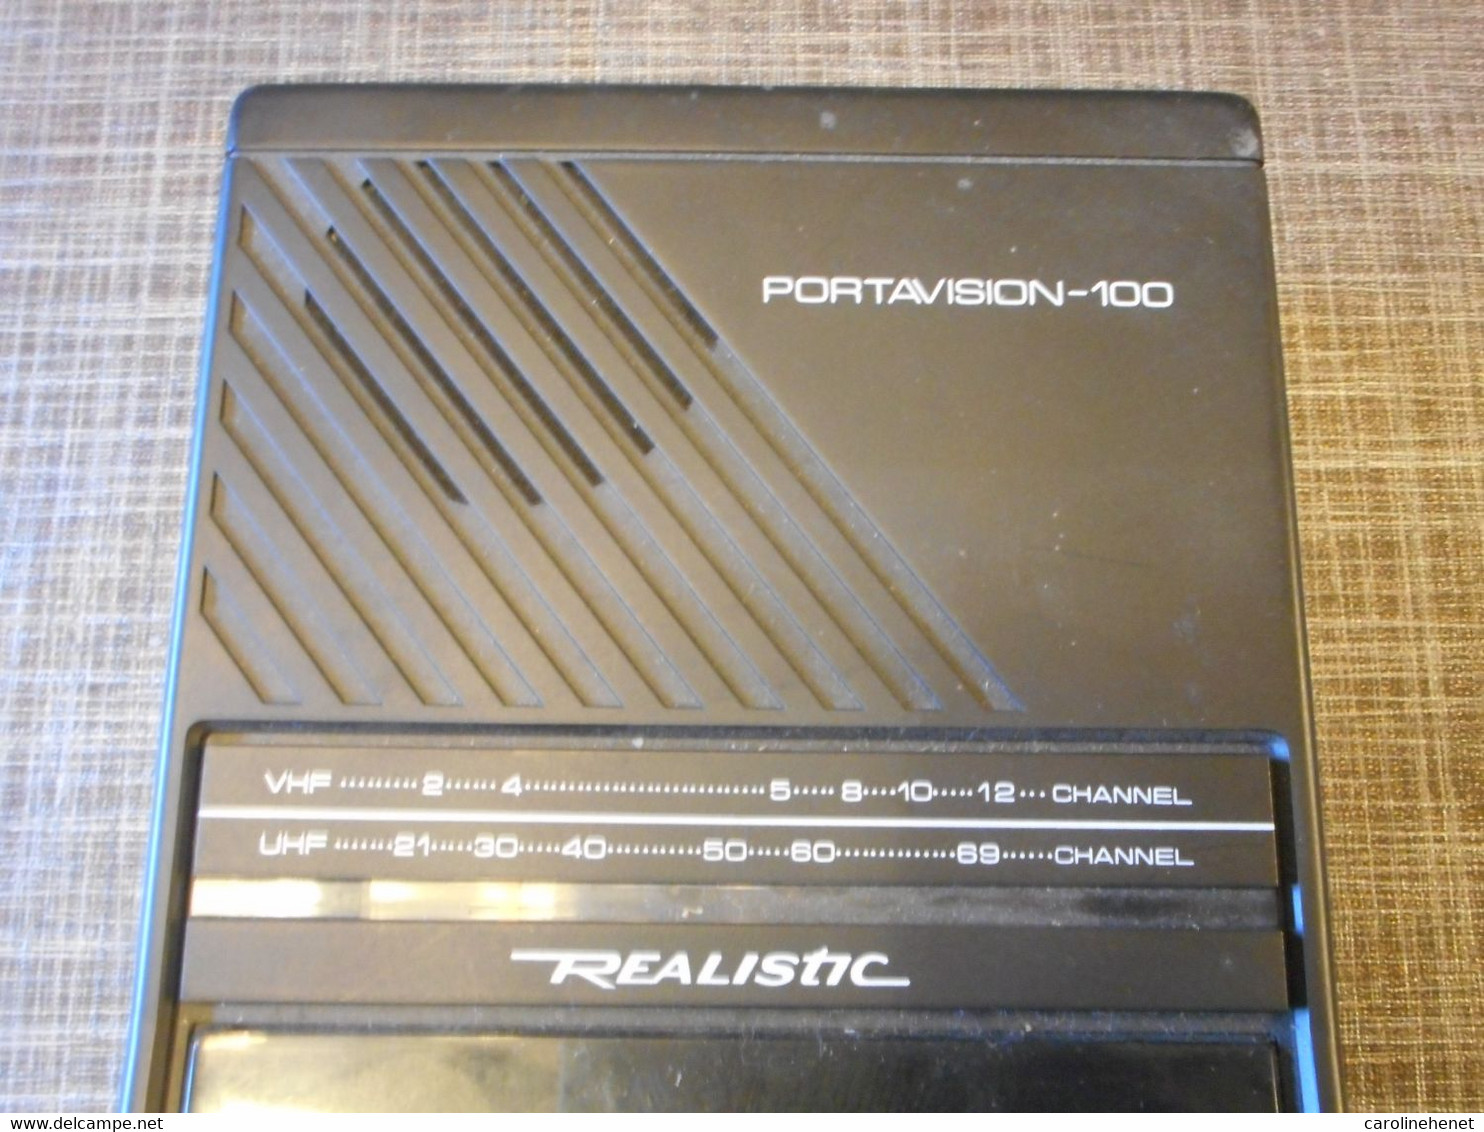 PORTAVISION-100 Realistic - Televisione